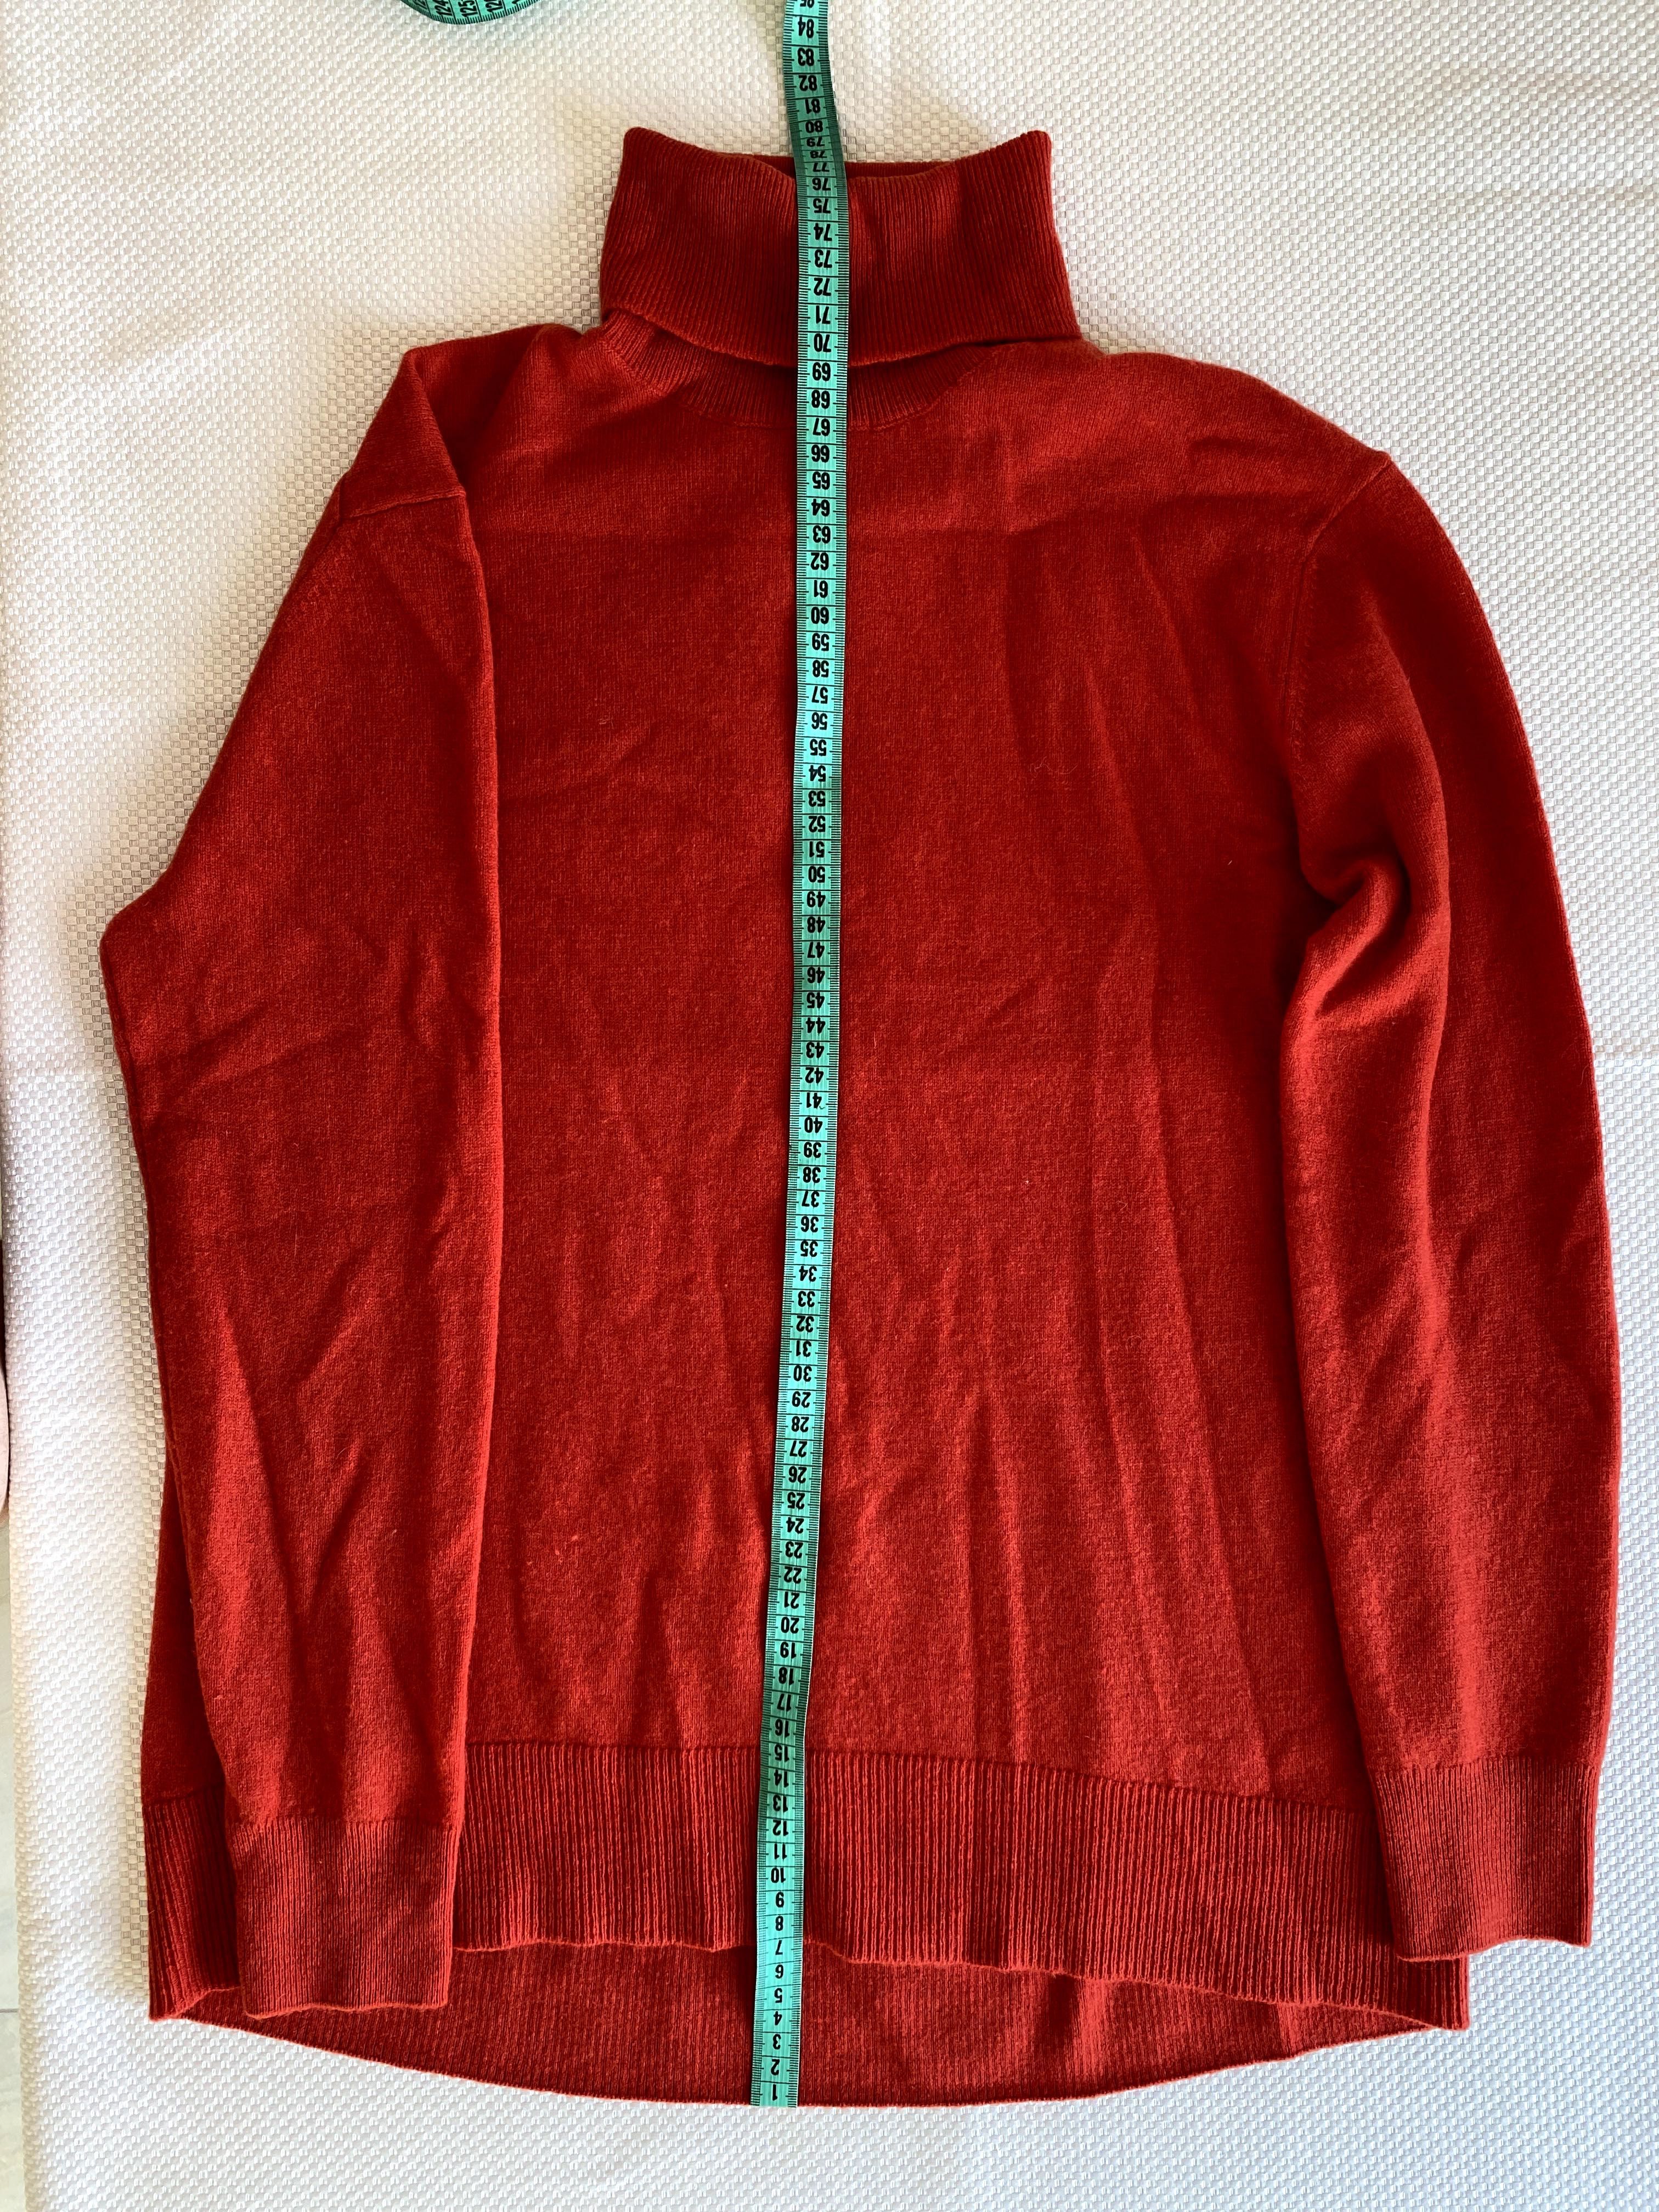 Женский свитер Massimo Dutti Ref. 5615/5606/140 размер (М)